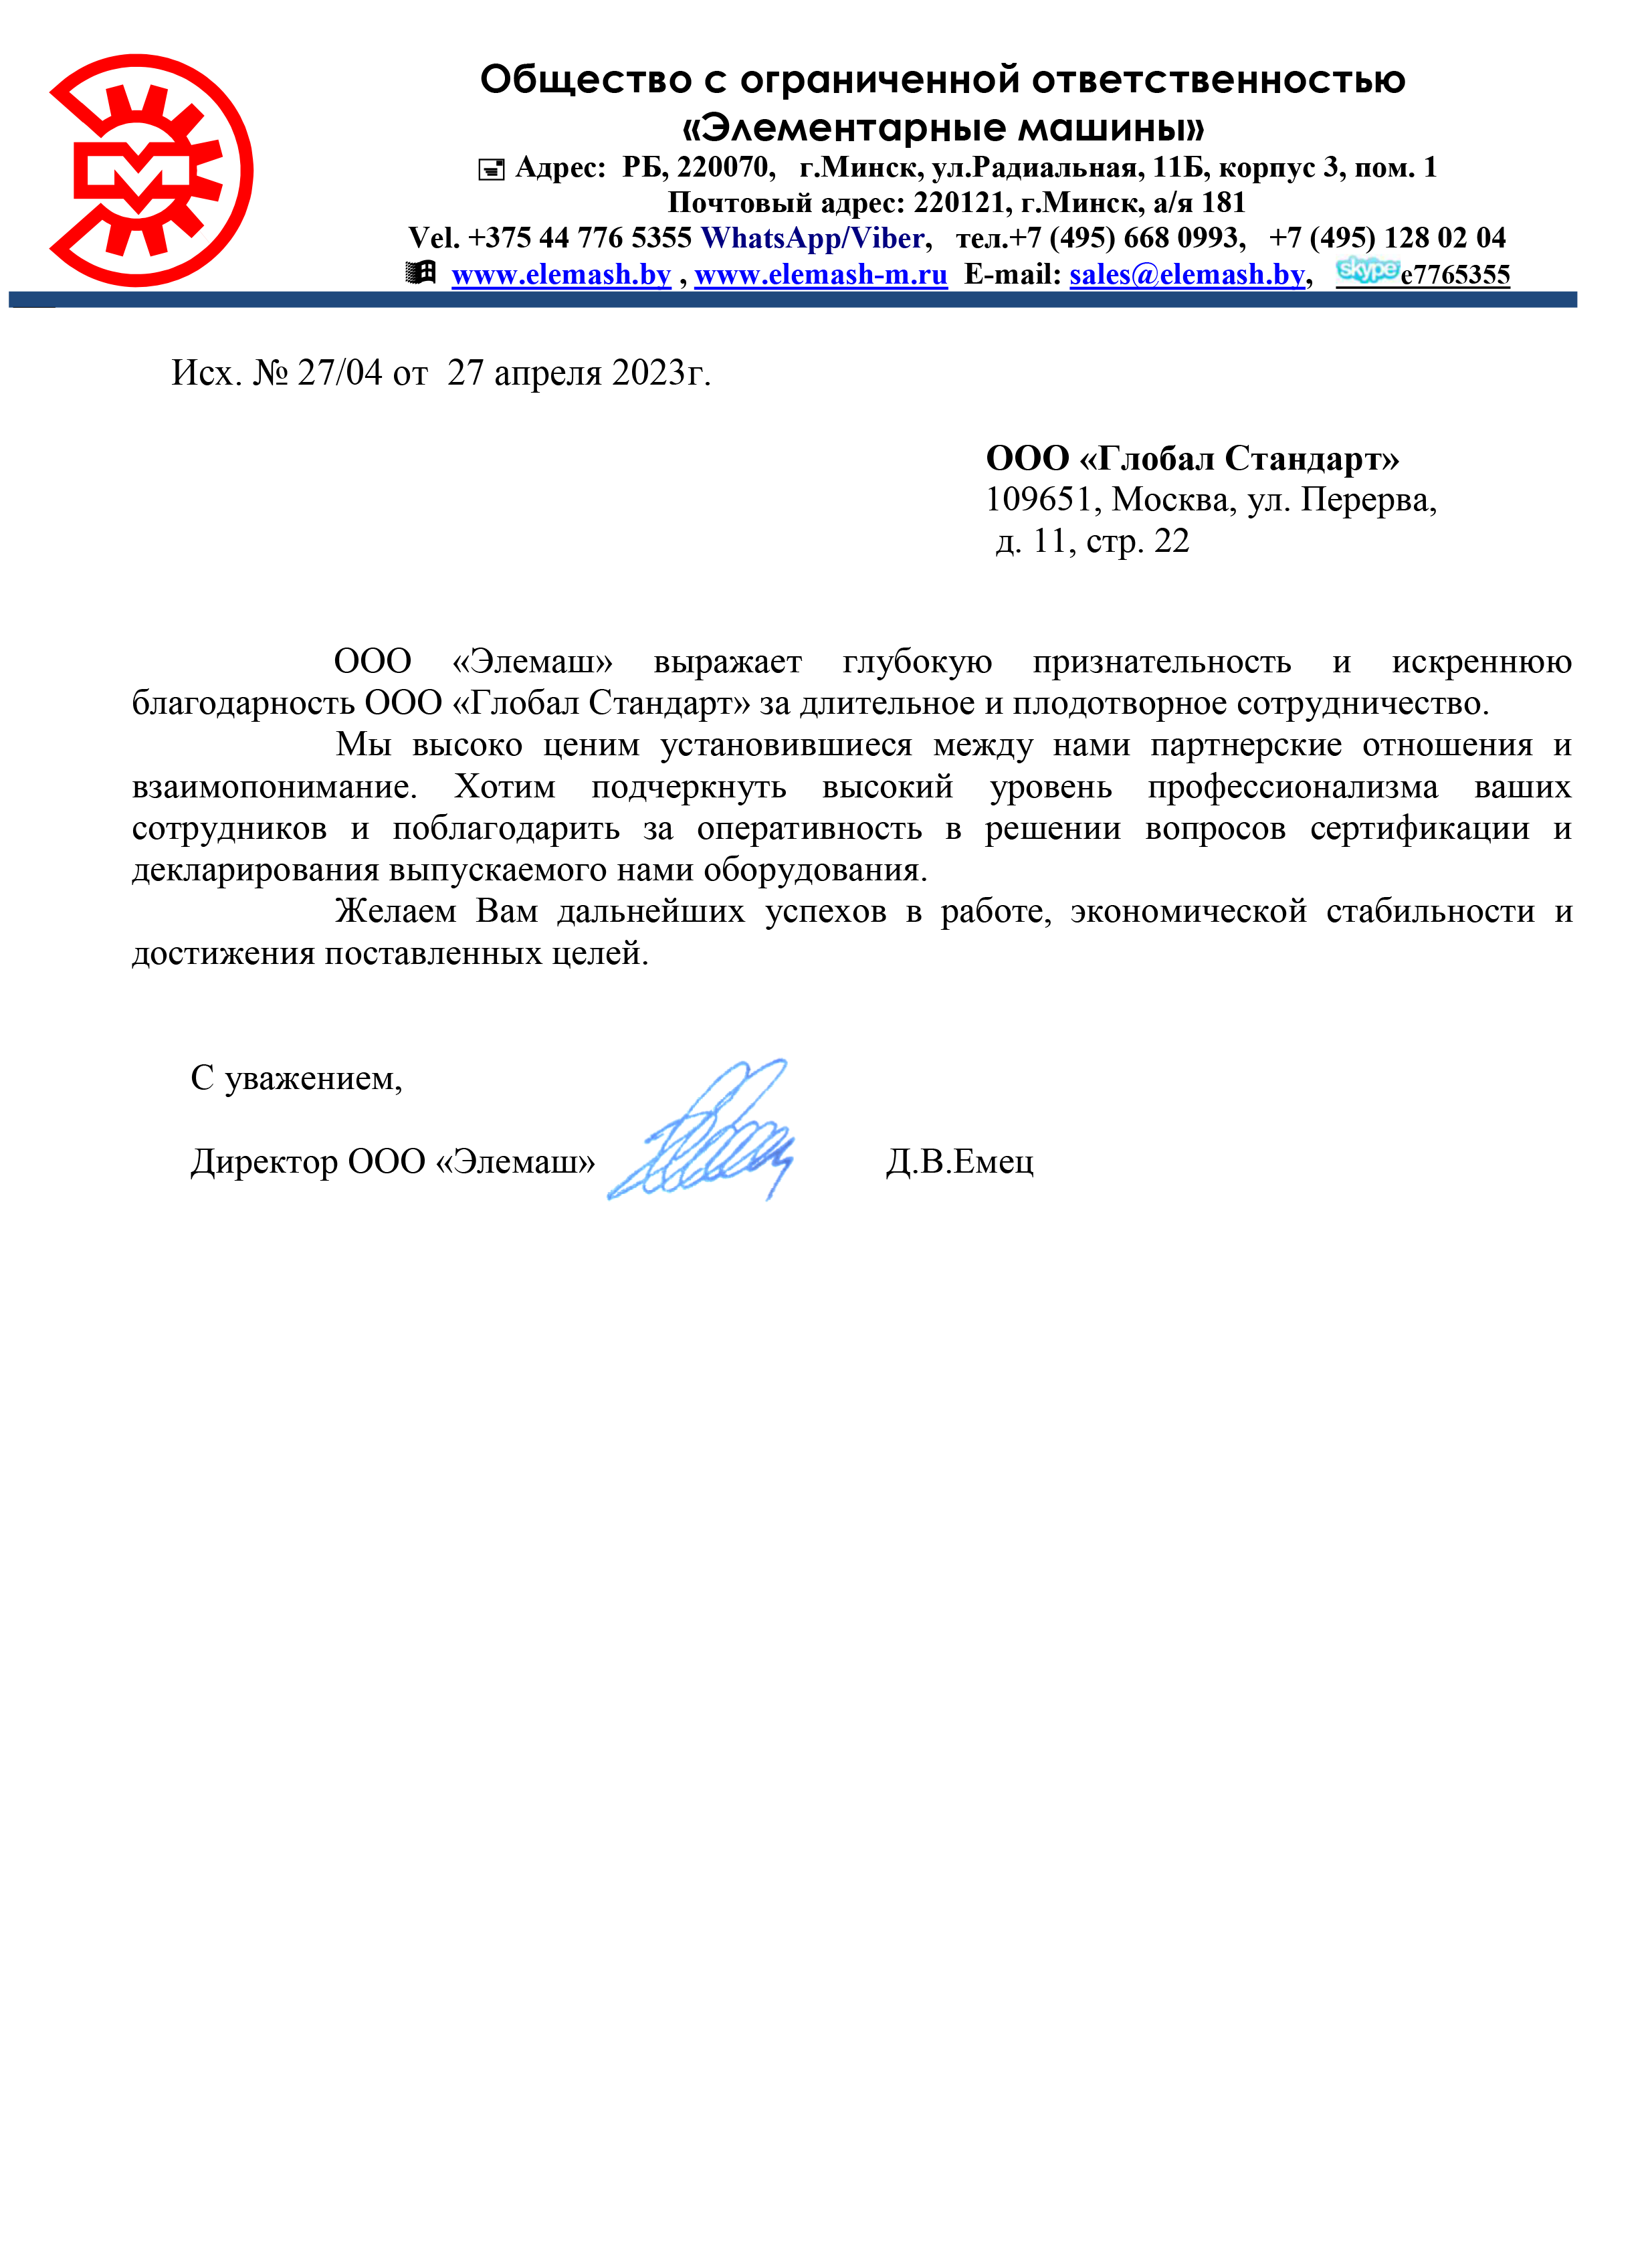 Благодарственное письмо в орган сертификации продукции от Элемаш 27.04.23